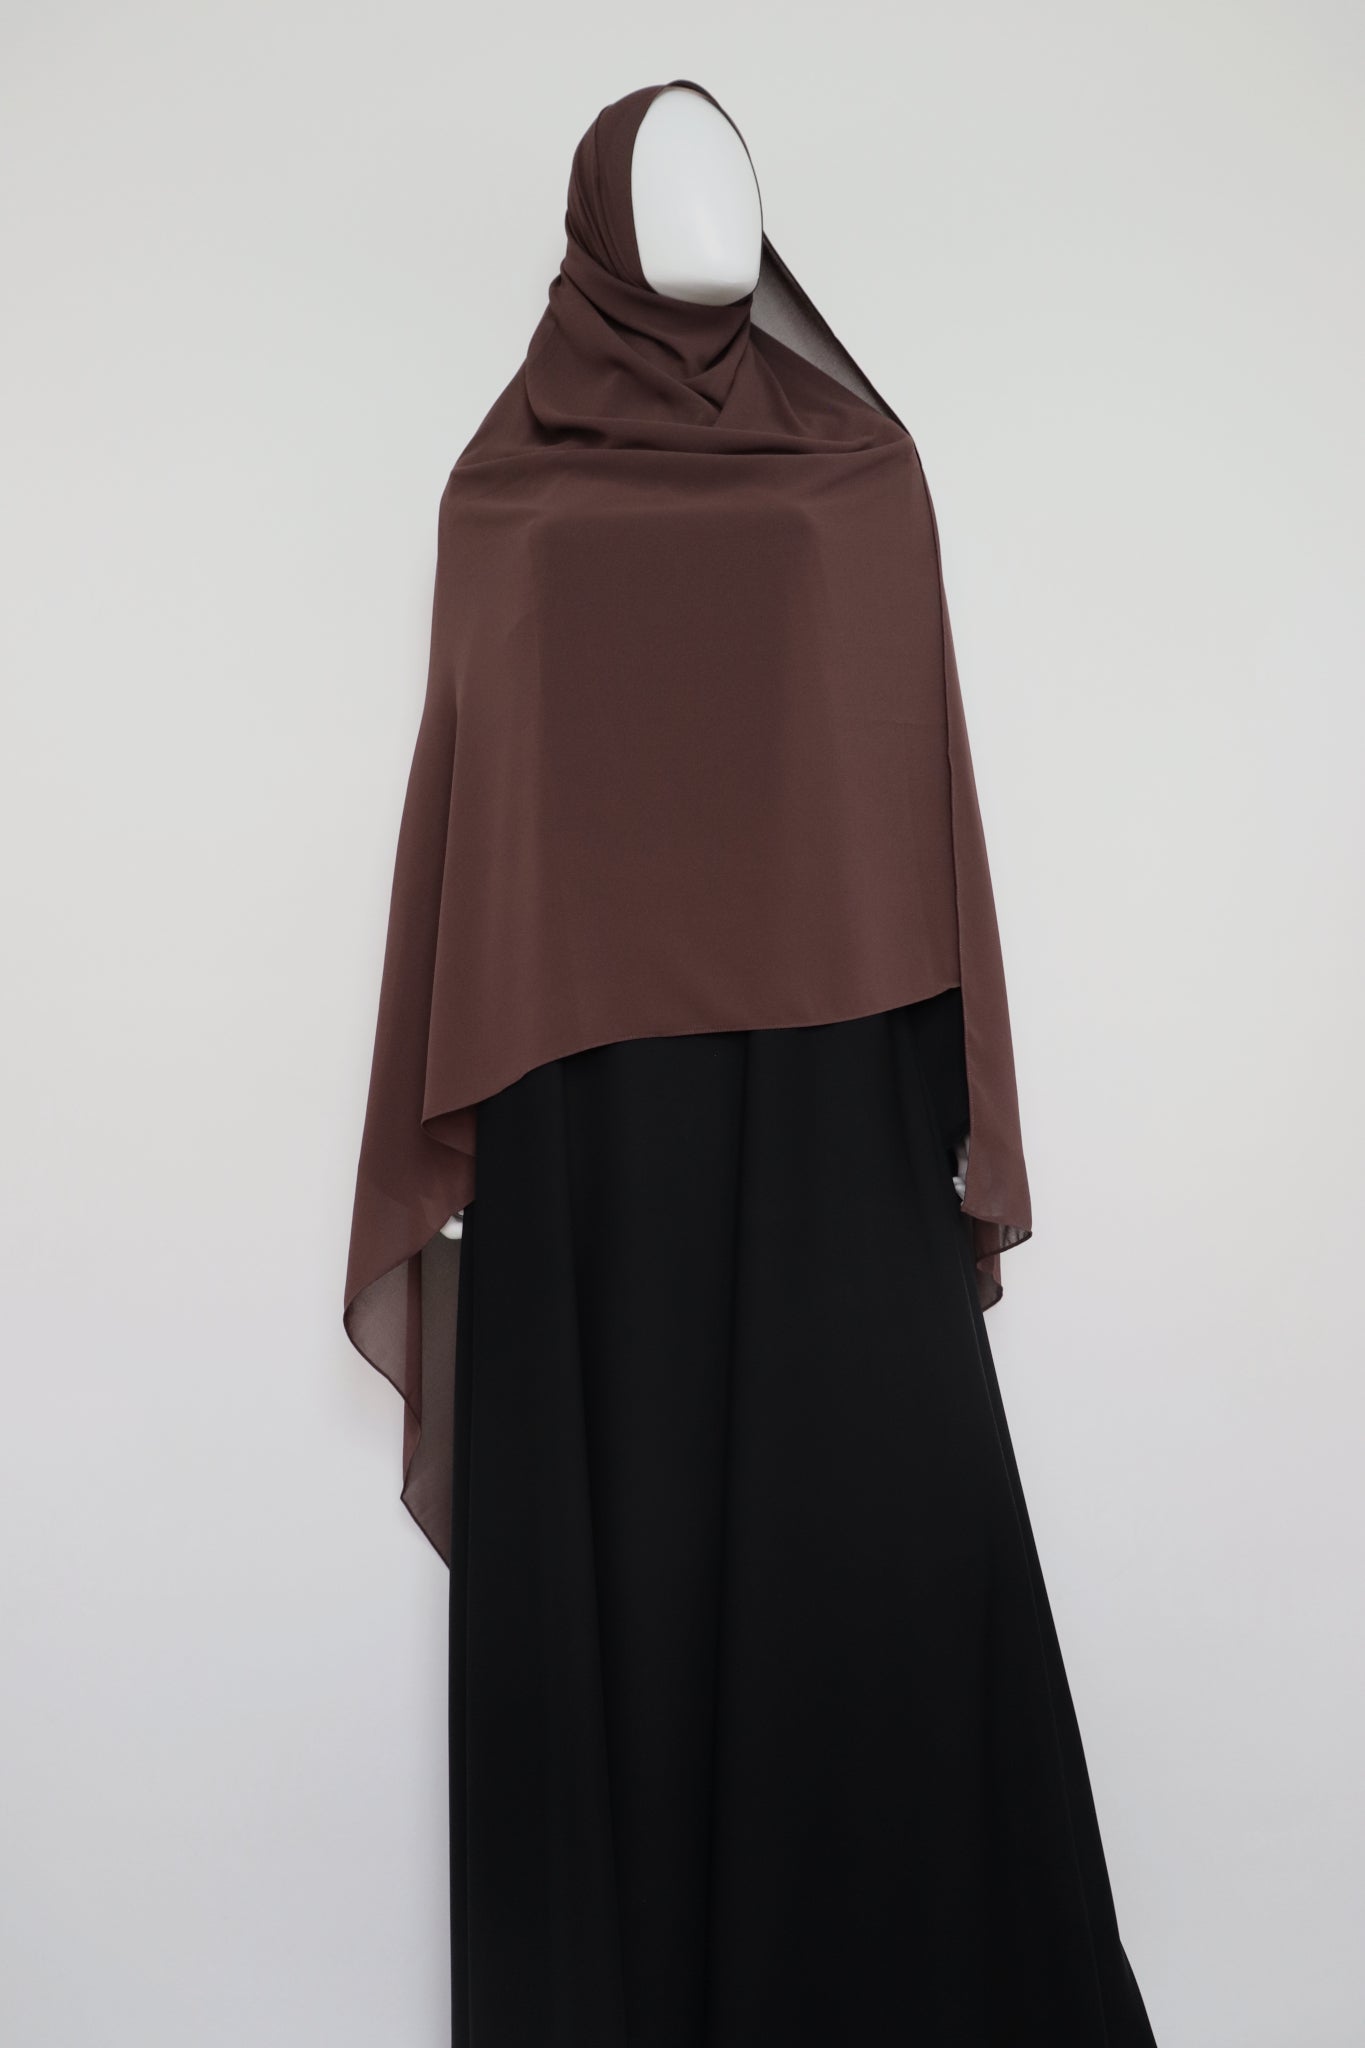 XL Premium Chiffon Hijab and Niqab Set - Choco